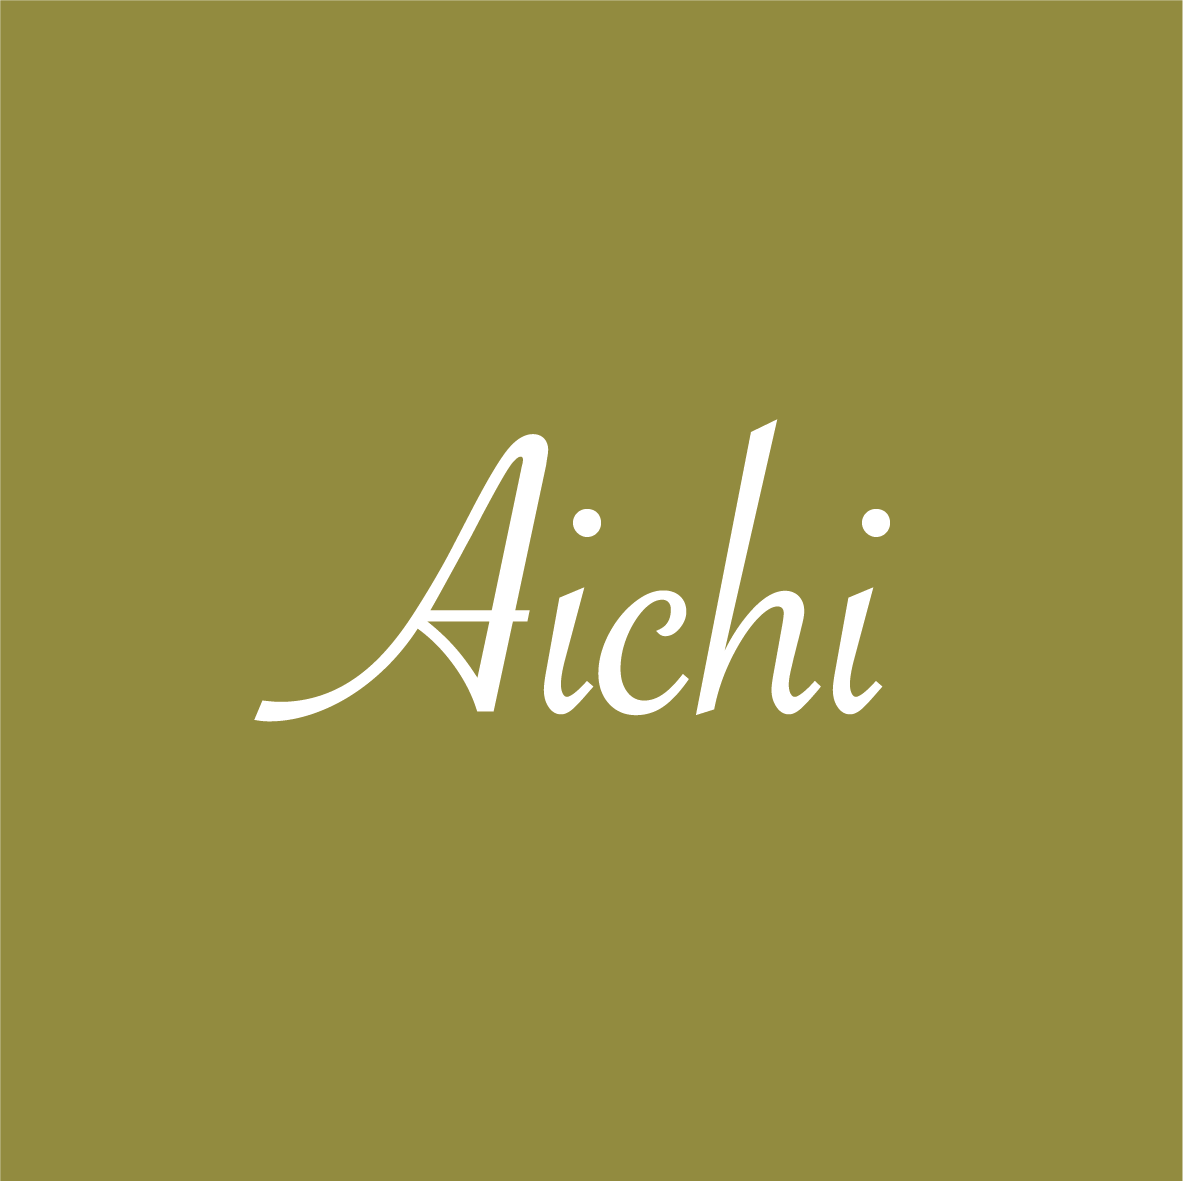 Aichi